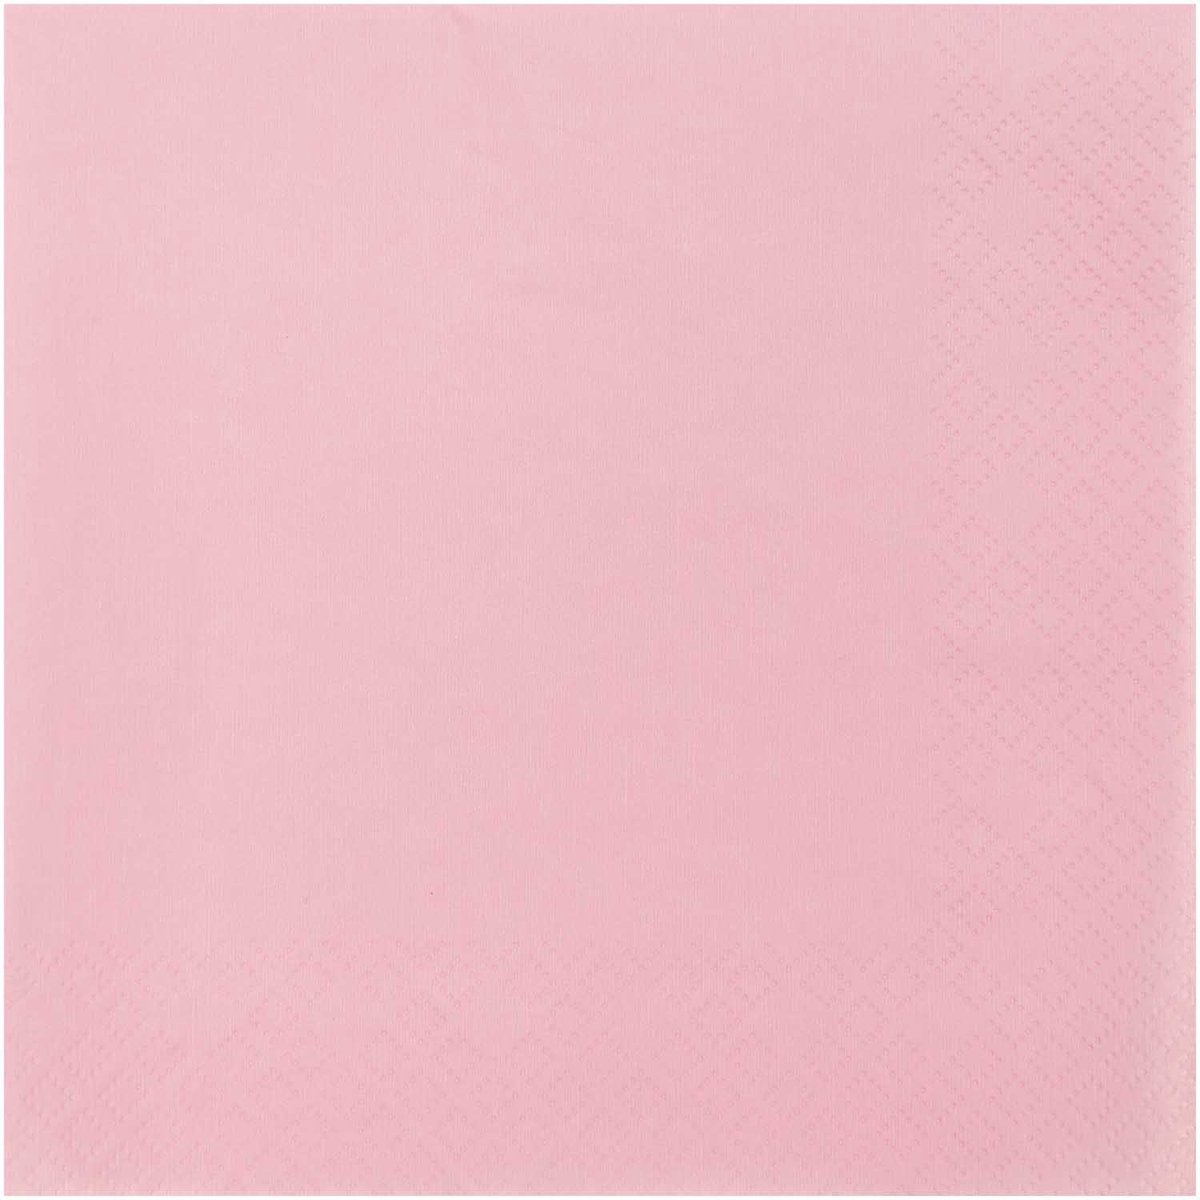 20x Papieren tafel servetten roze 33 x 33 cm - Roze wegwerp servetten diner/lunch - PartyDeco